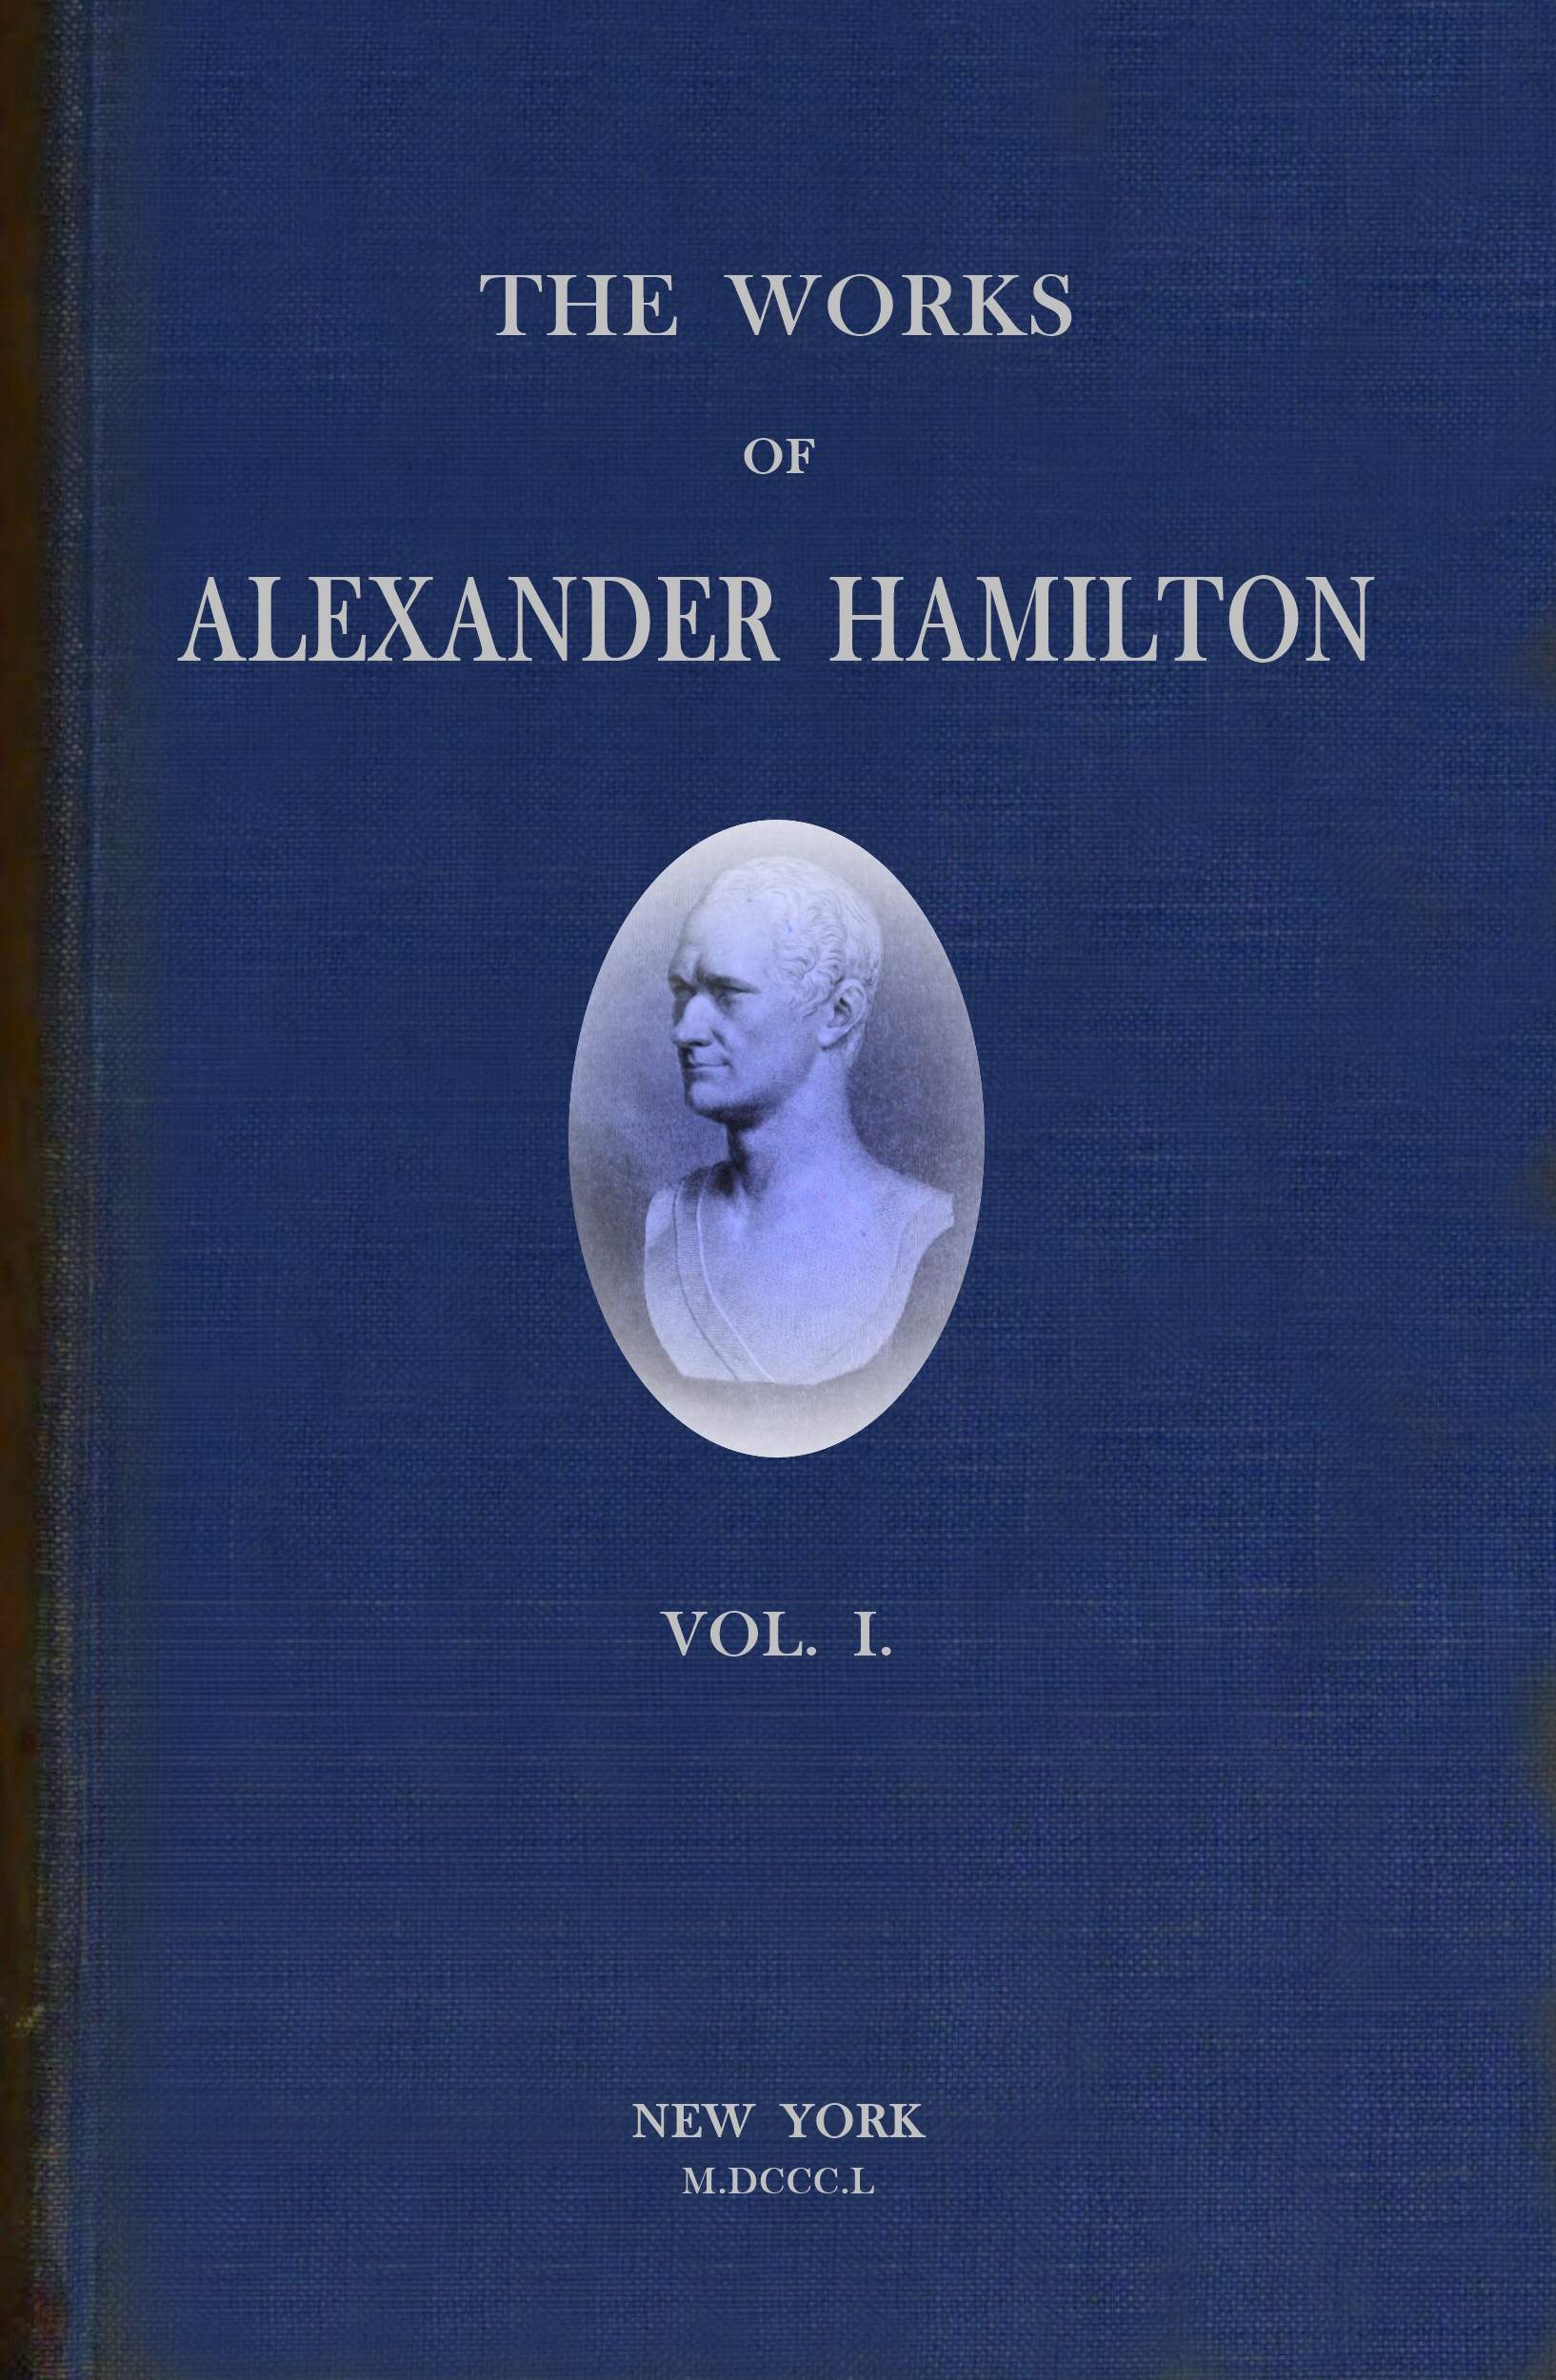 Alexander Hamilton'ın Eserleri (7 ciltlik setin 1. cildi)